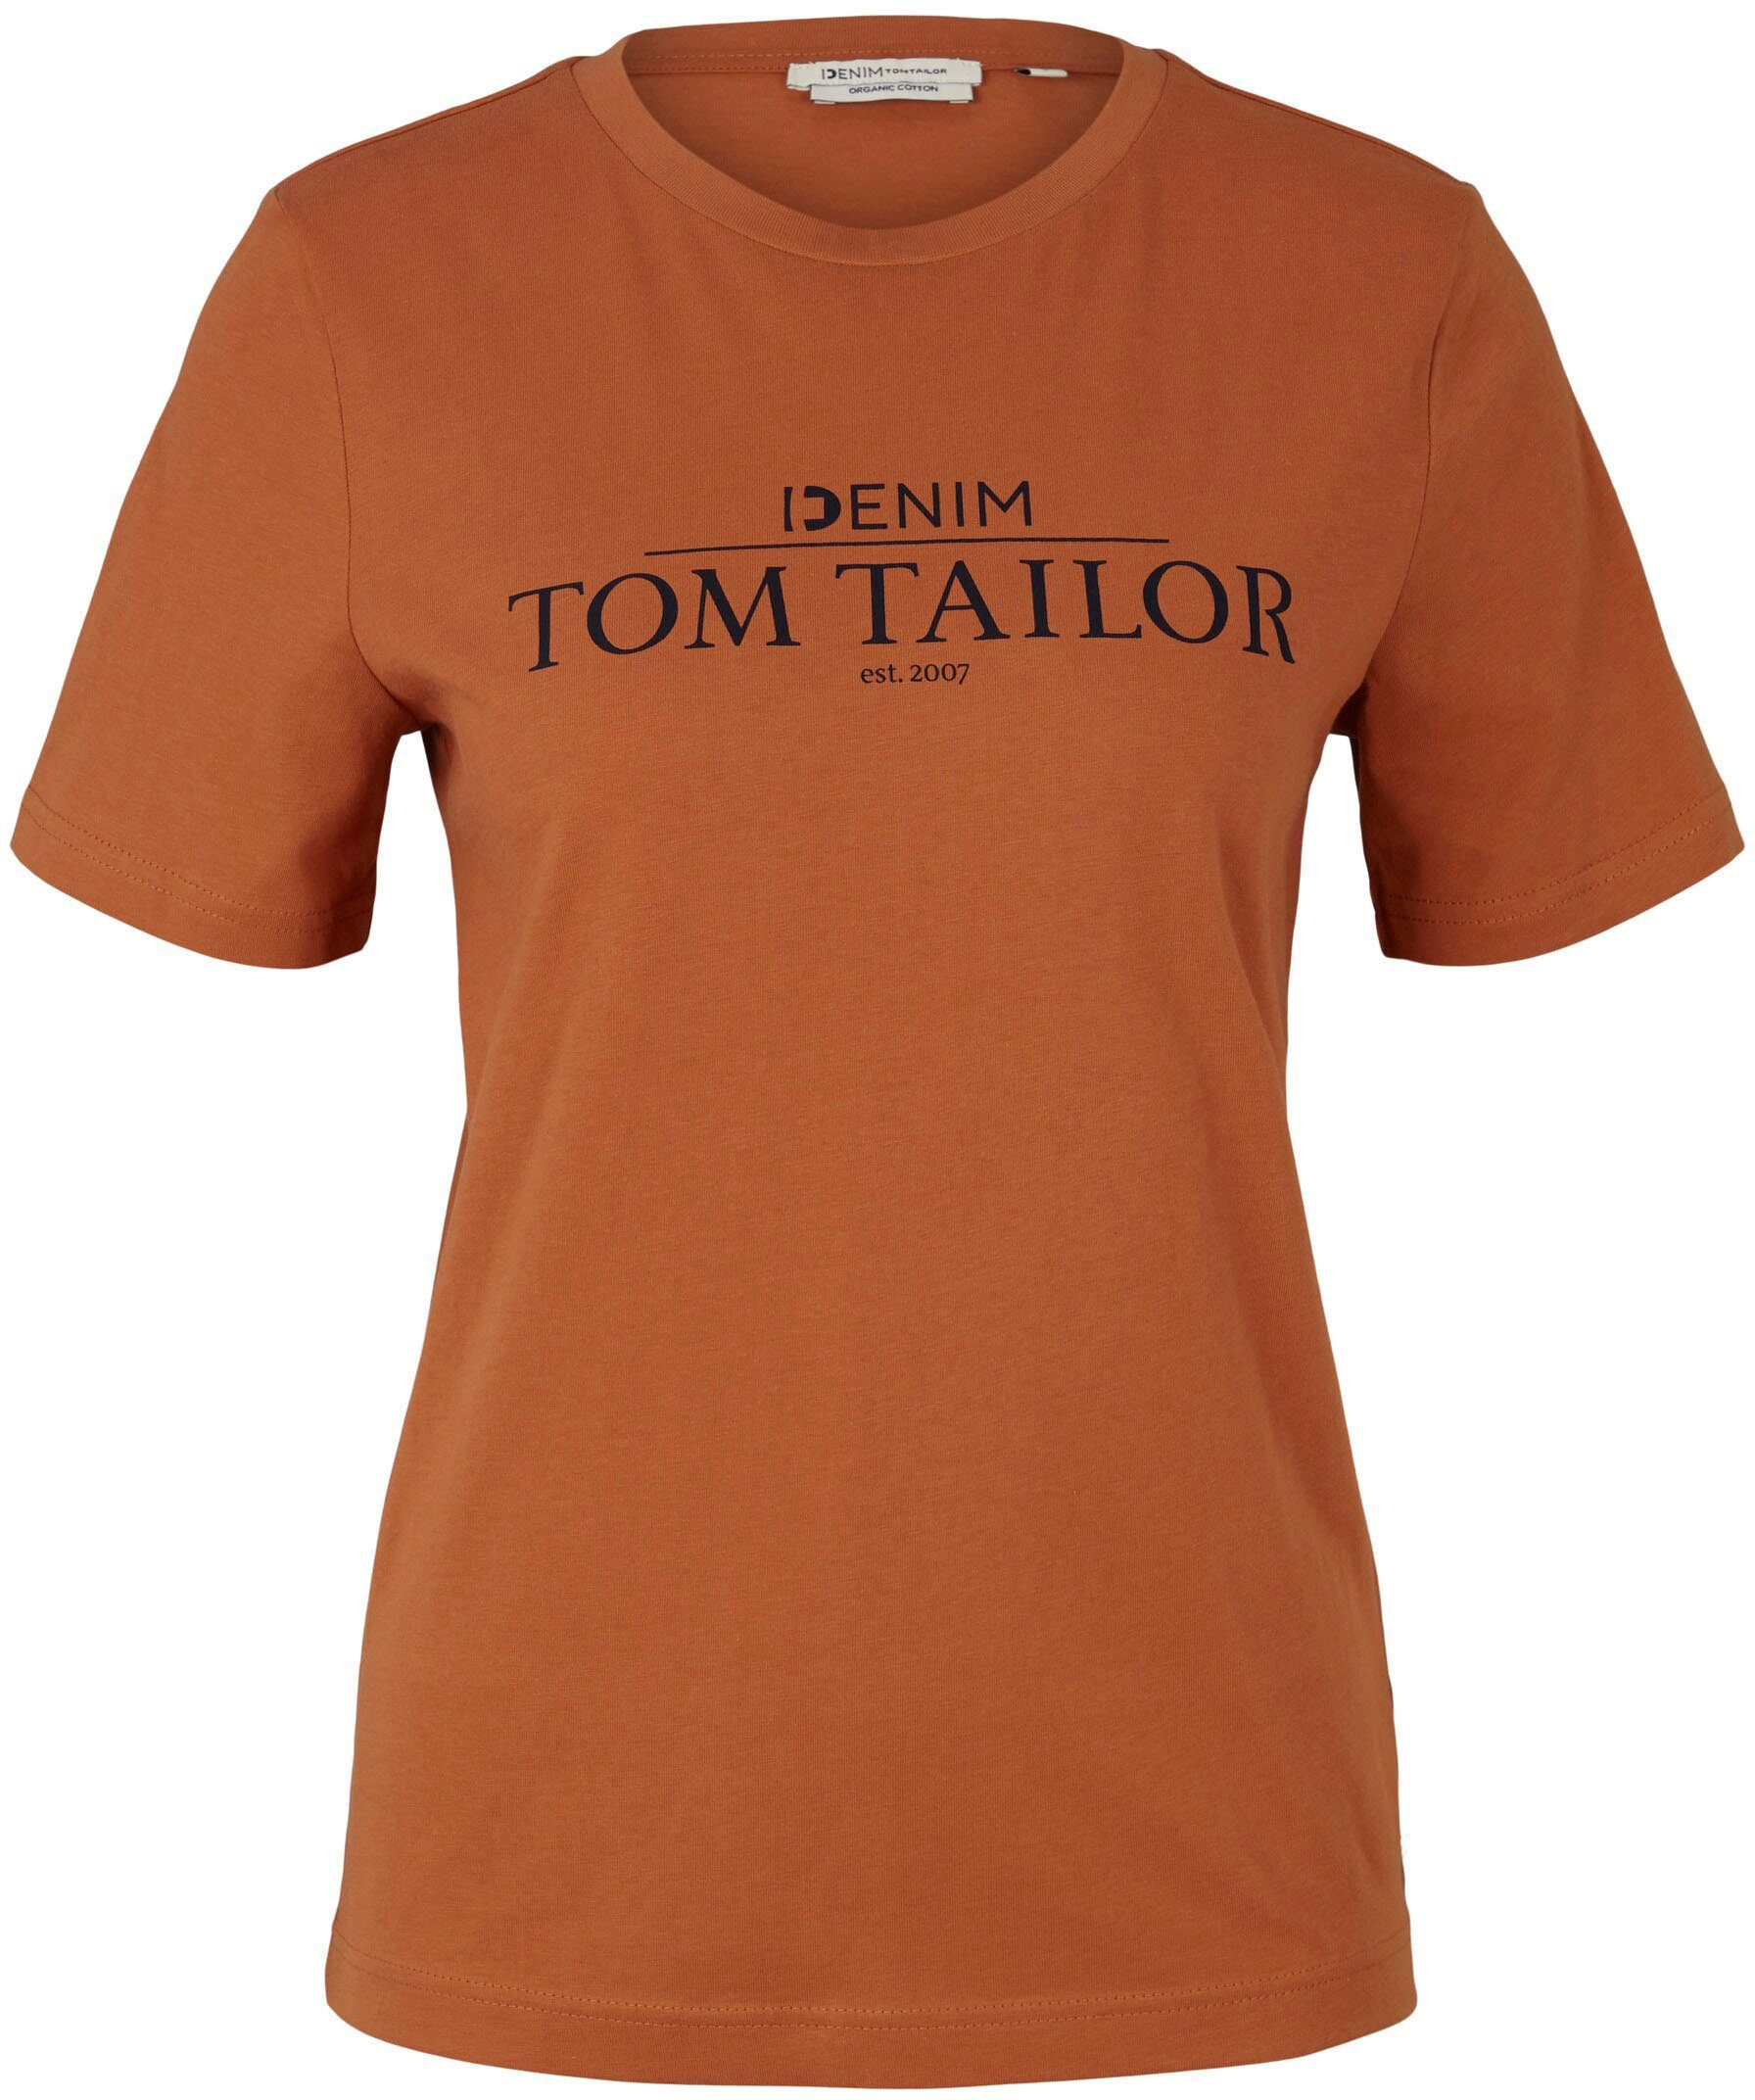 neu angekommen TOM TAILOR Denim der mit Logo auf amber Brust T-Shirt Print